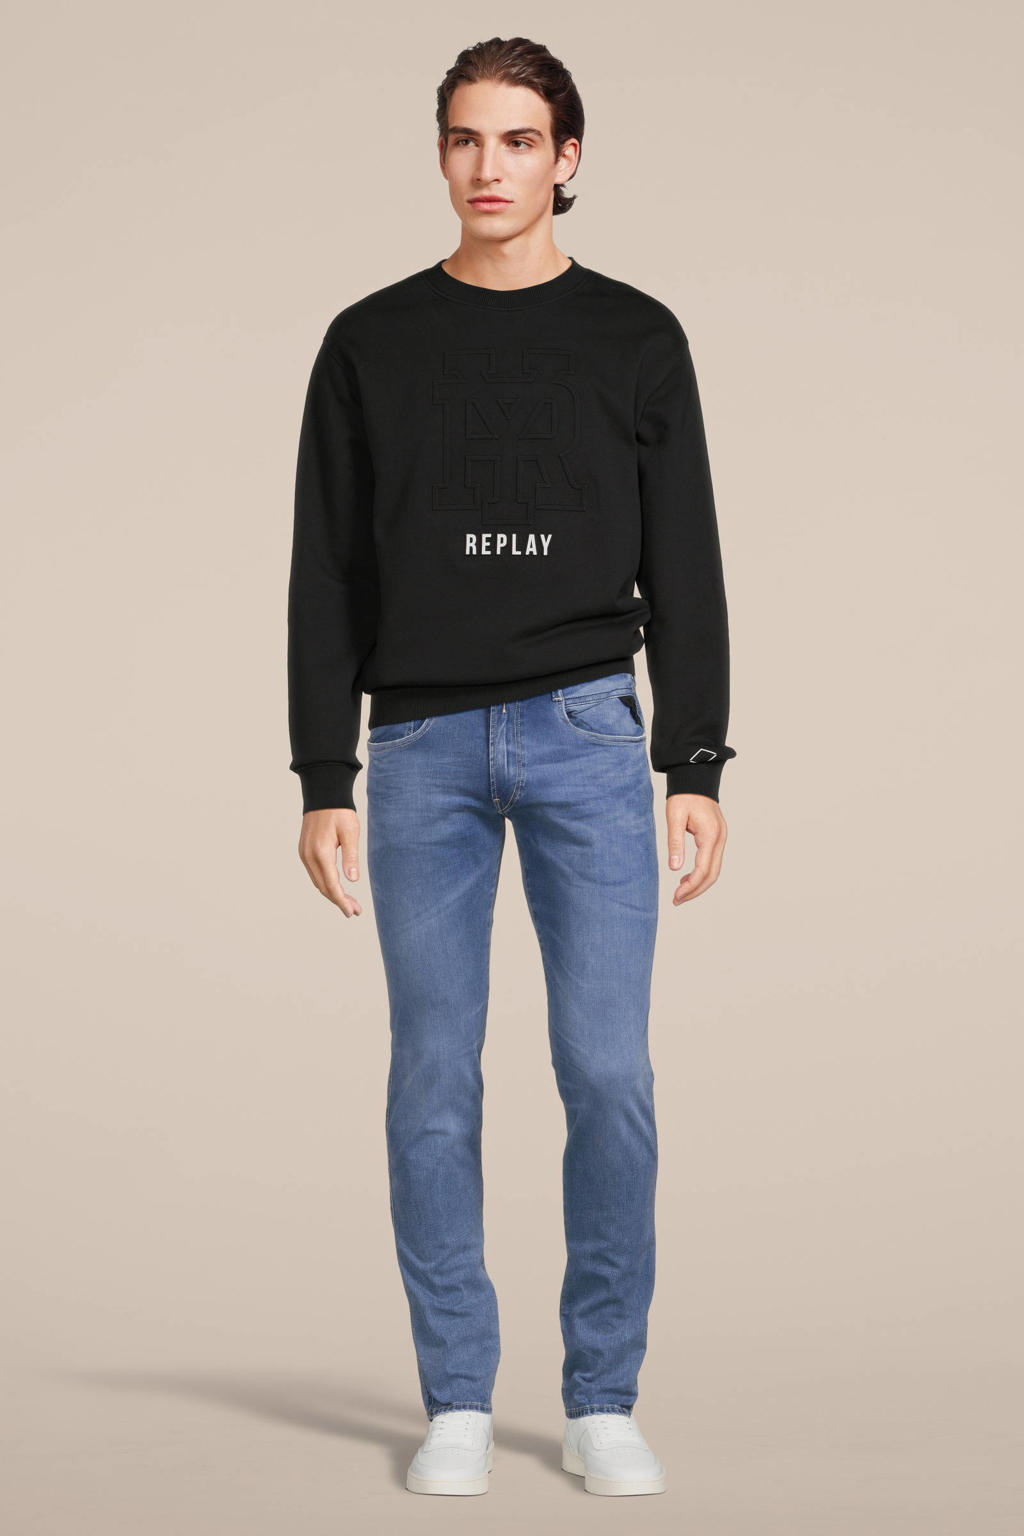 REPLAY sweater met printopdruk black